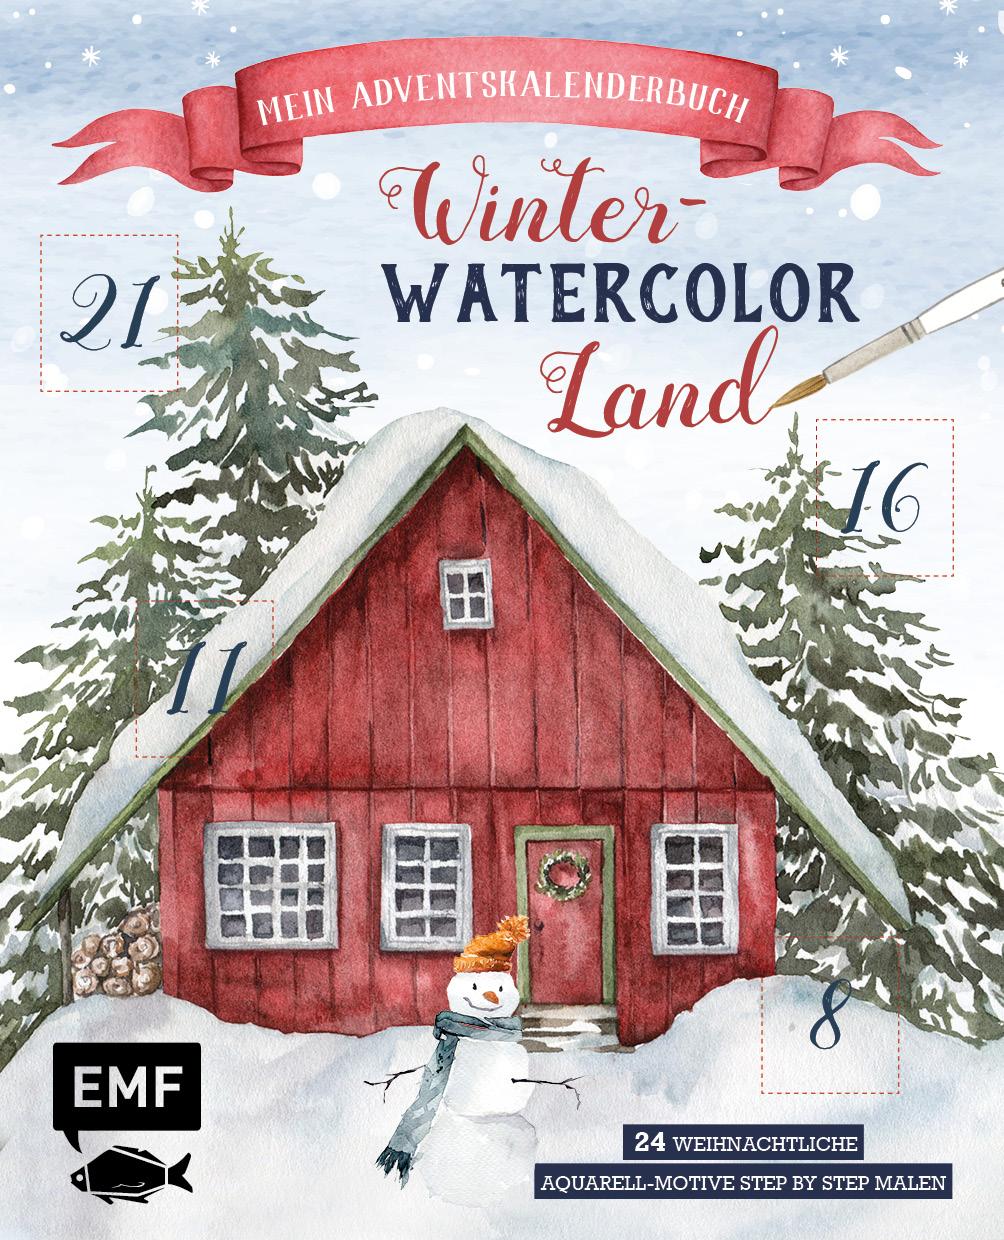 Carte Mein Adventskalender-Buch: Winter-Watercolor-Land 